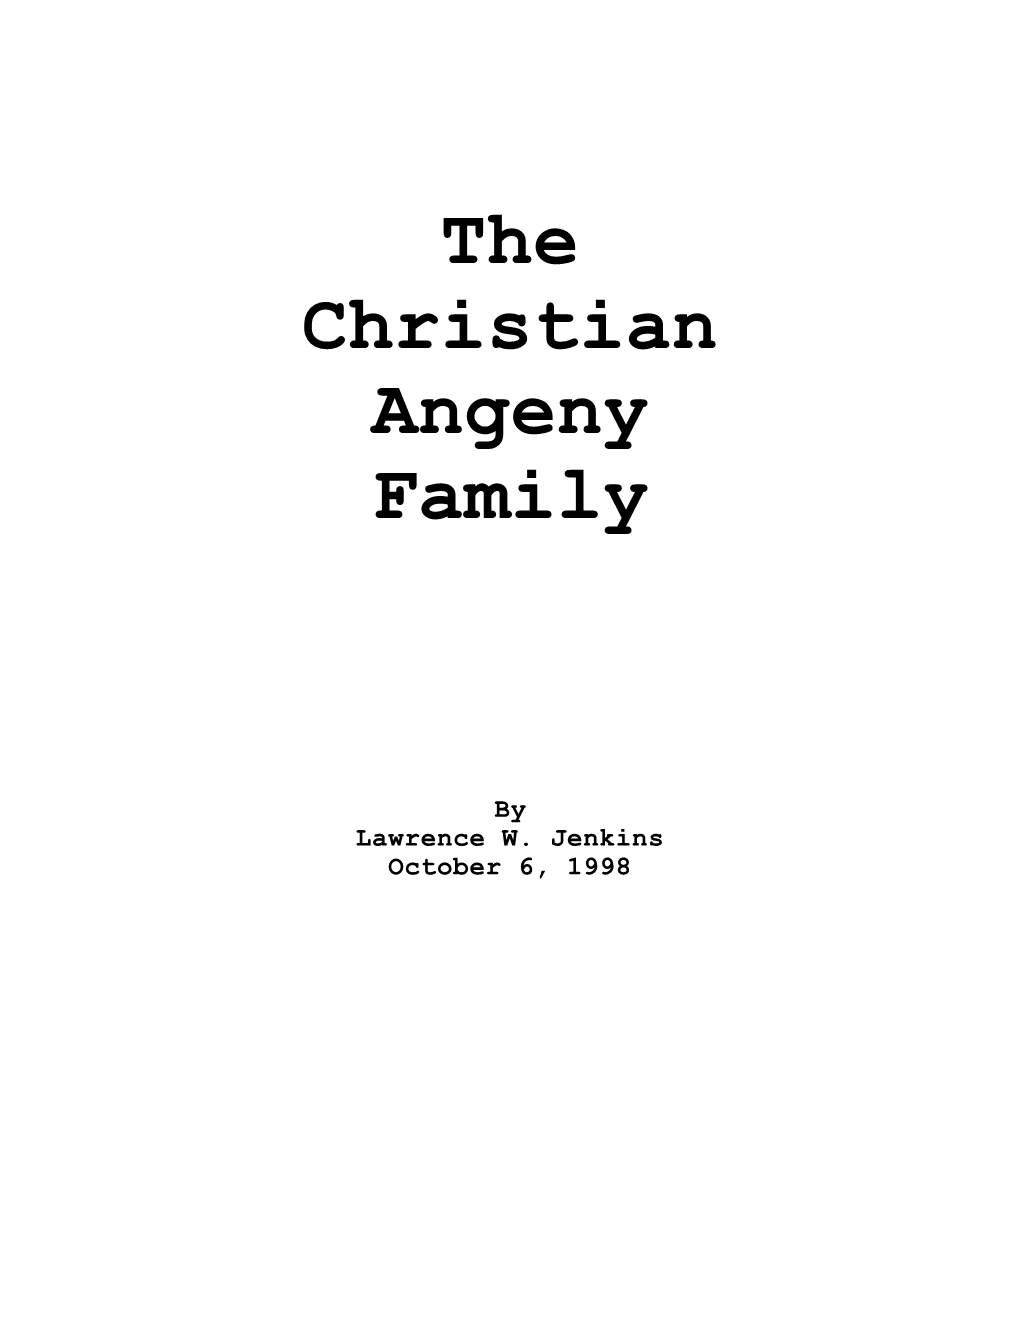 The Christian Angeny Family